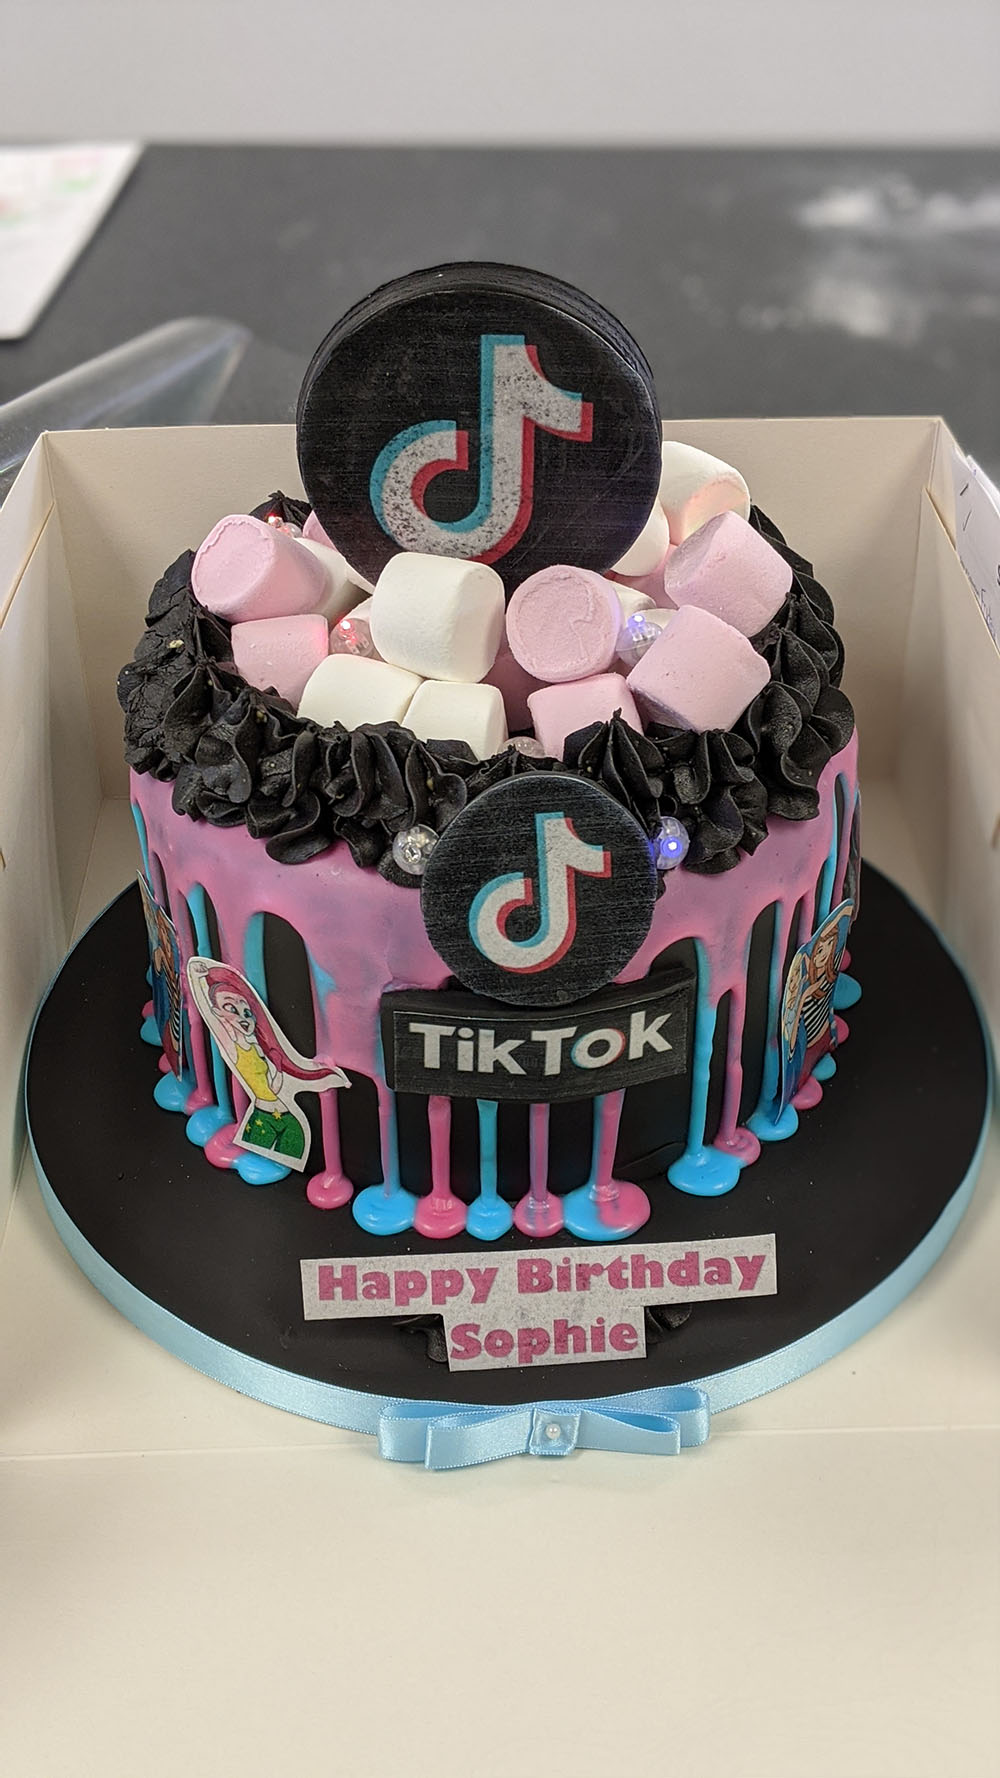 TikTok Cake Tutorial - Store Bought Turned into Tik Tok Cake - YouTube